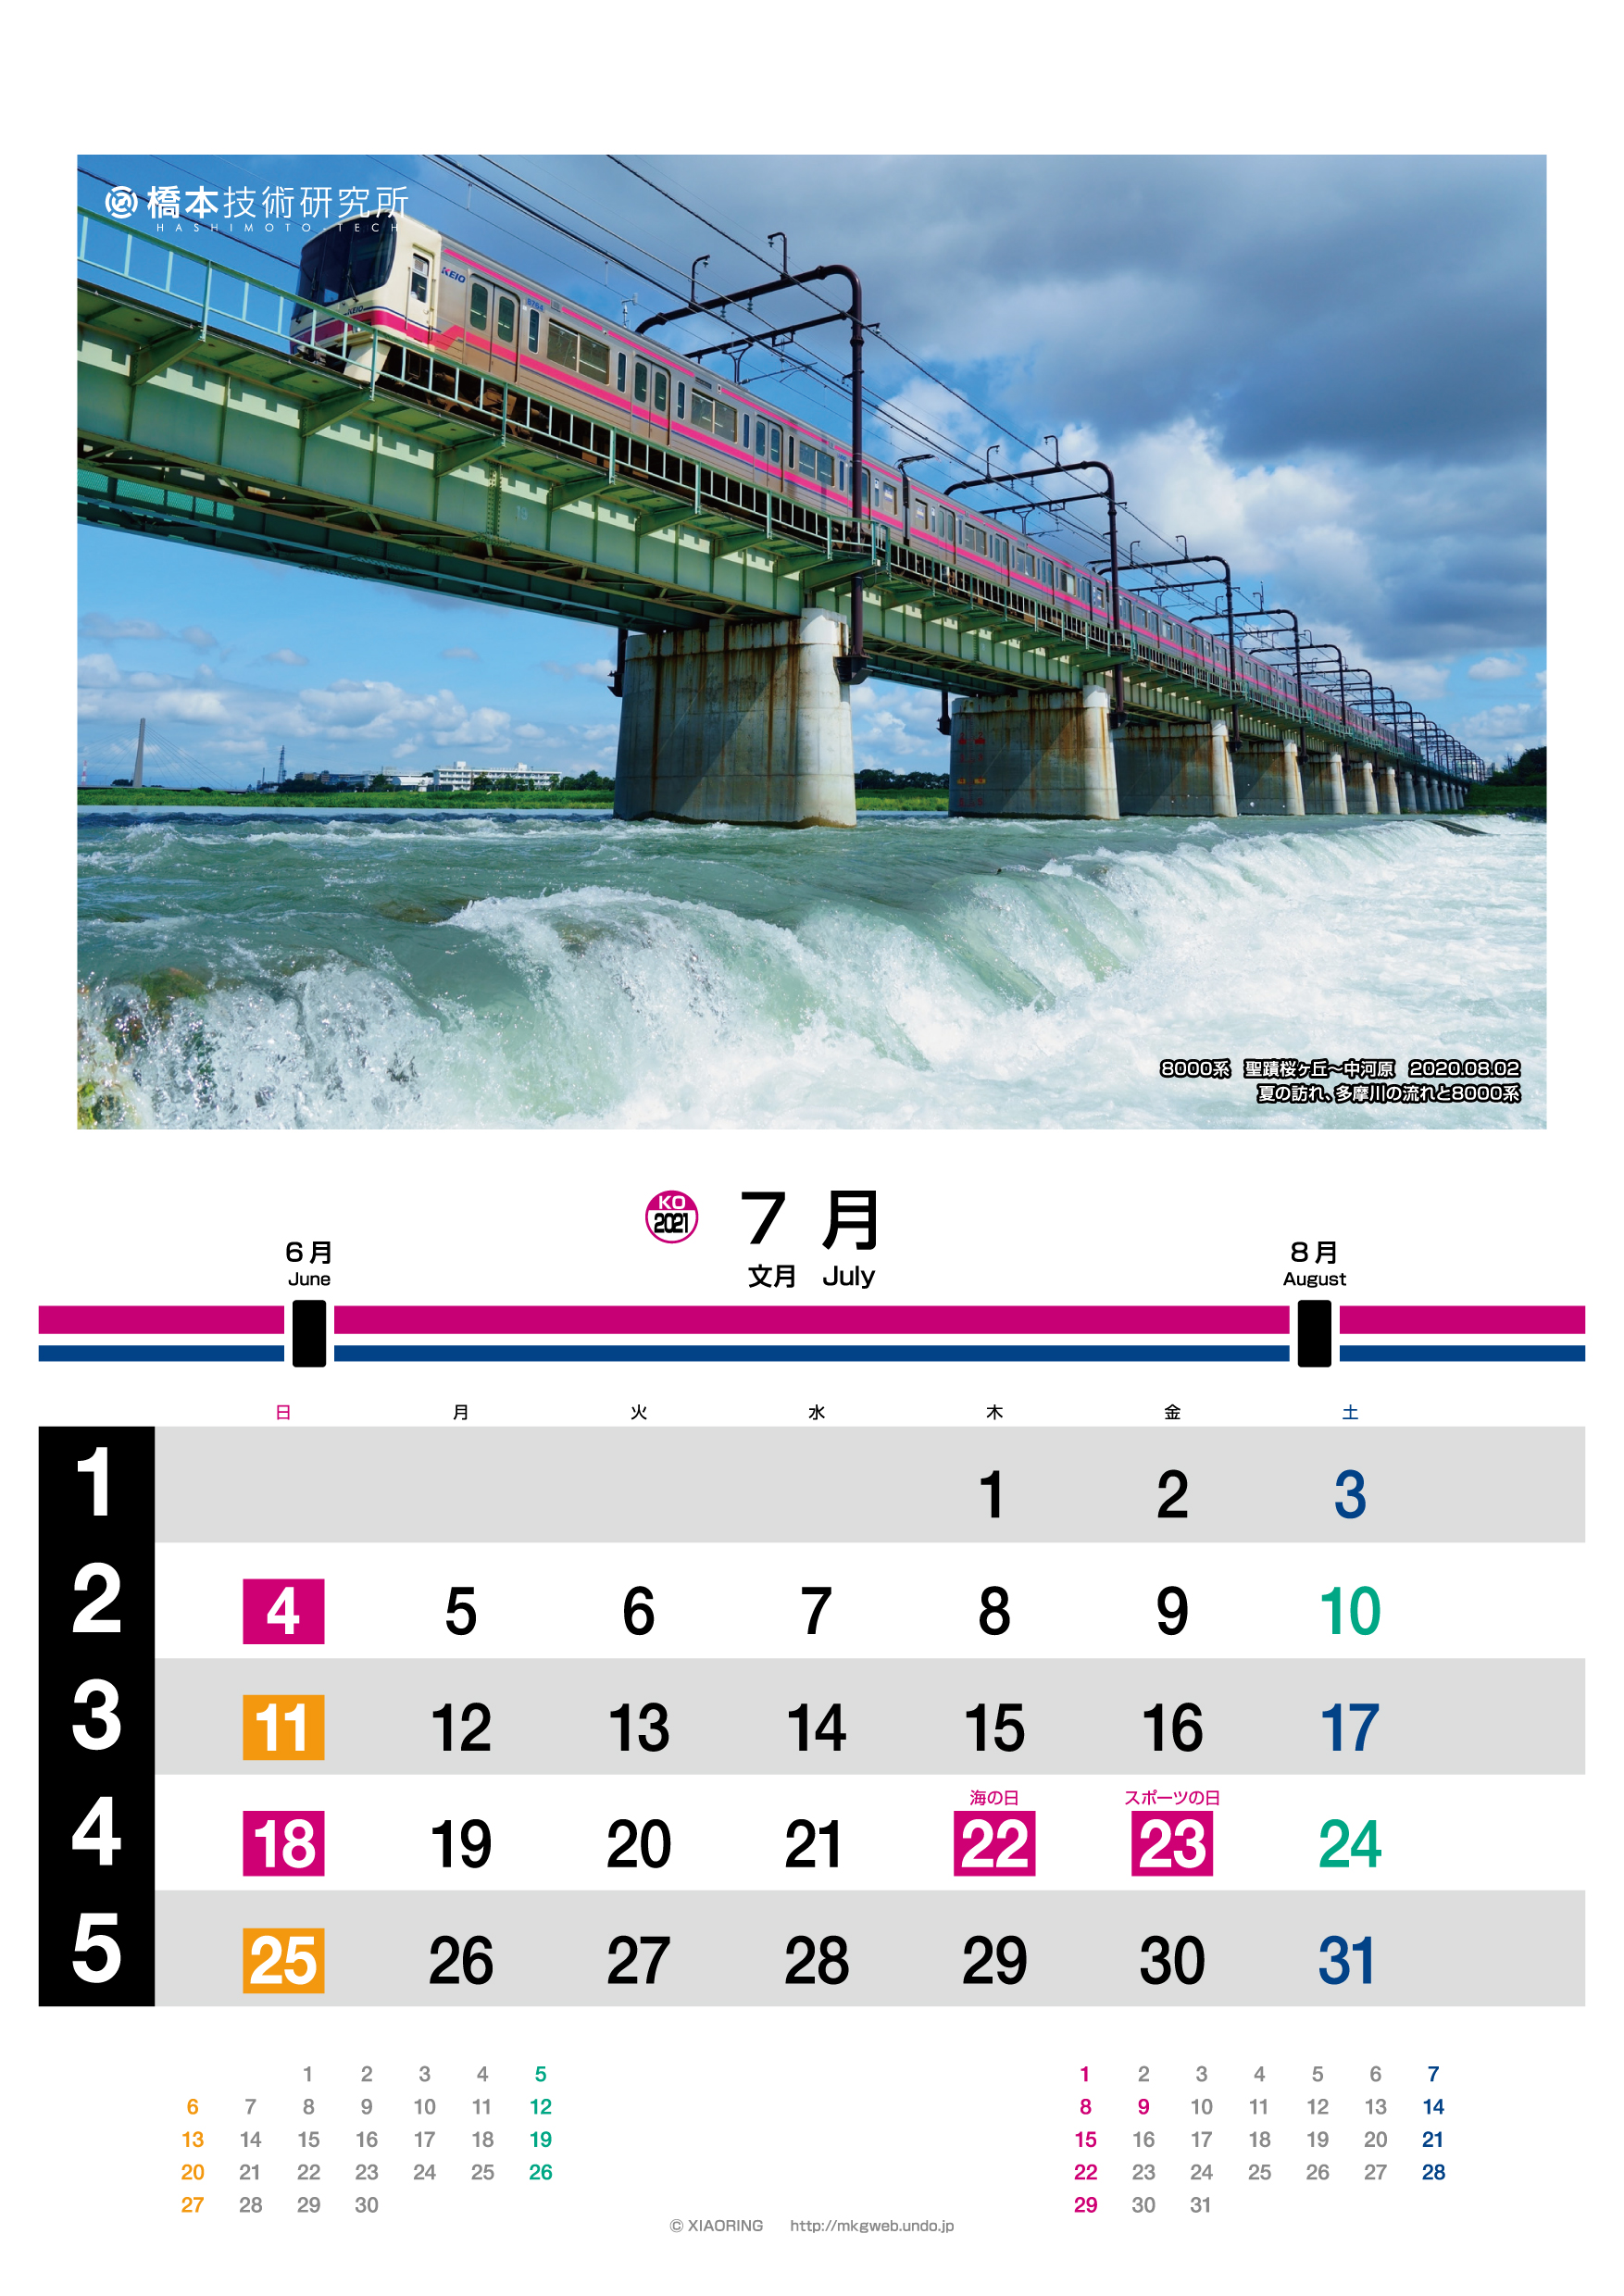 歴代京王カレンダー2004〜2021 - 鉄道